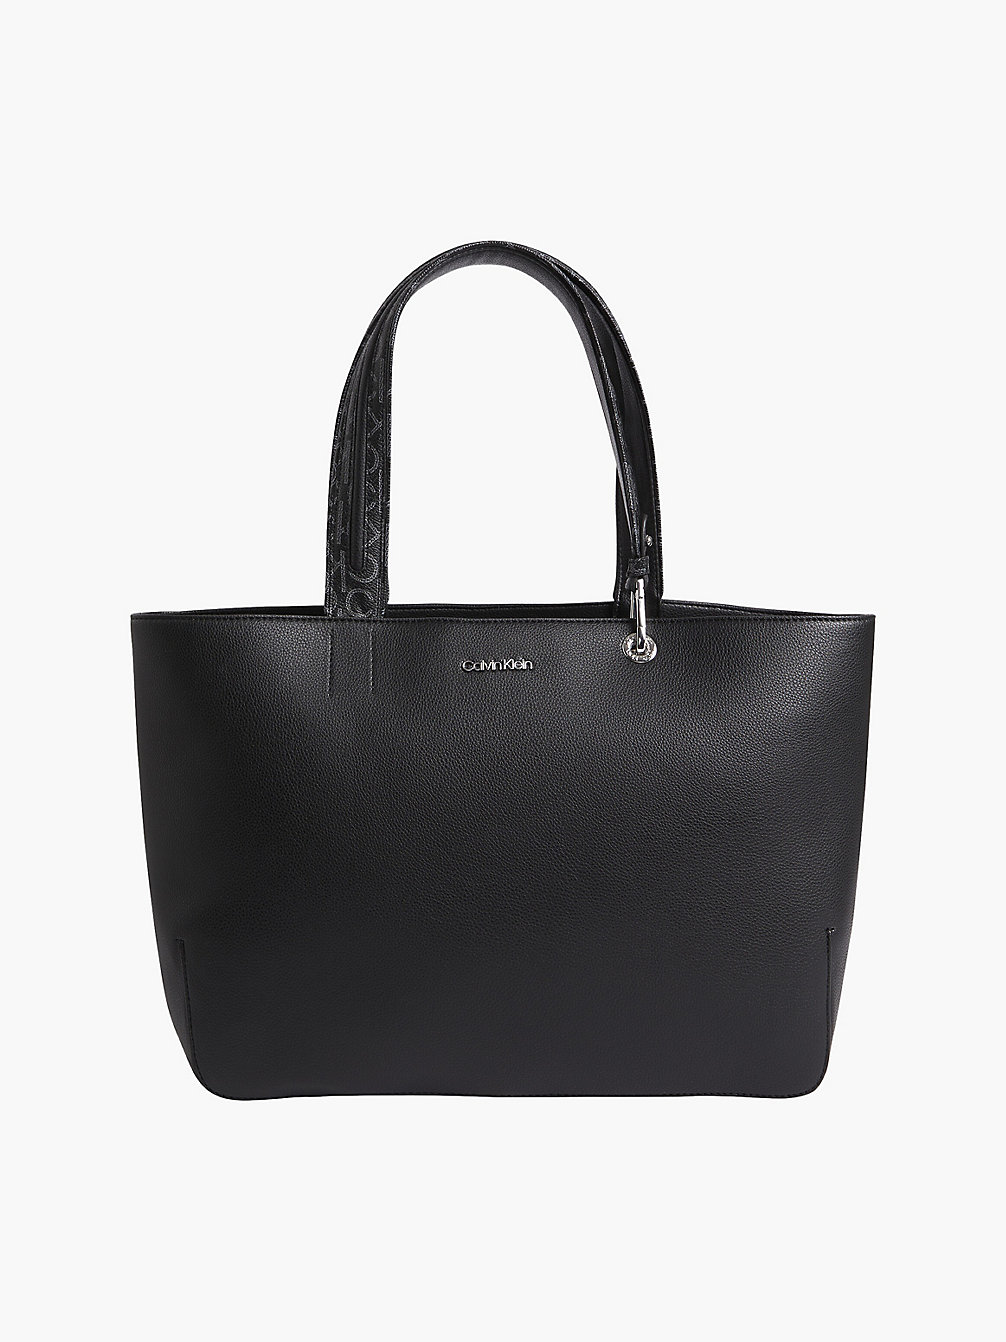 CK BLACK Tote Bag undefined women Calvin Klein